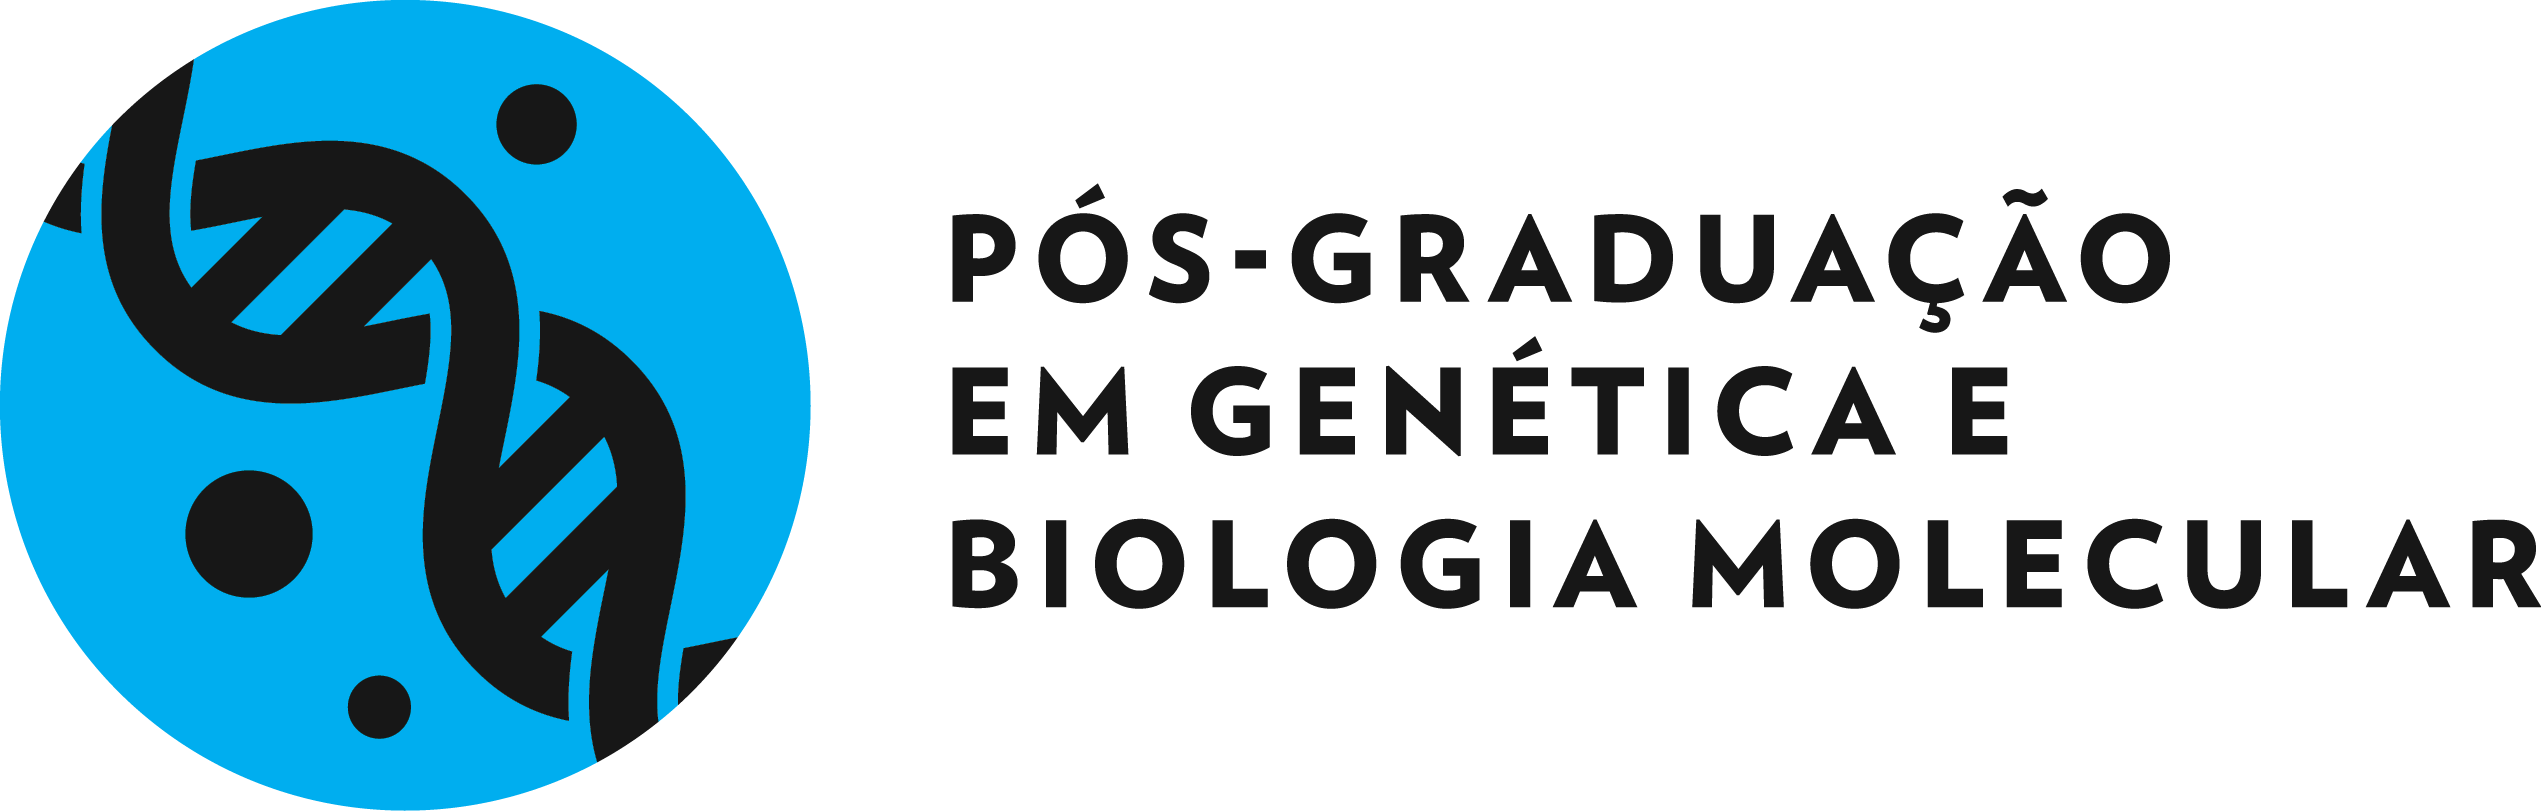 Programa de Pós-graduação em Genética e Biologia Molecular